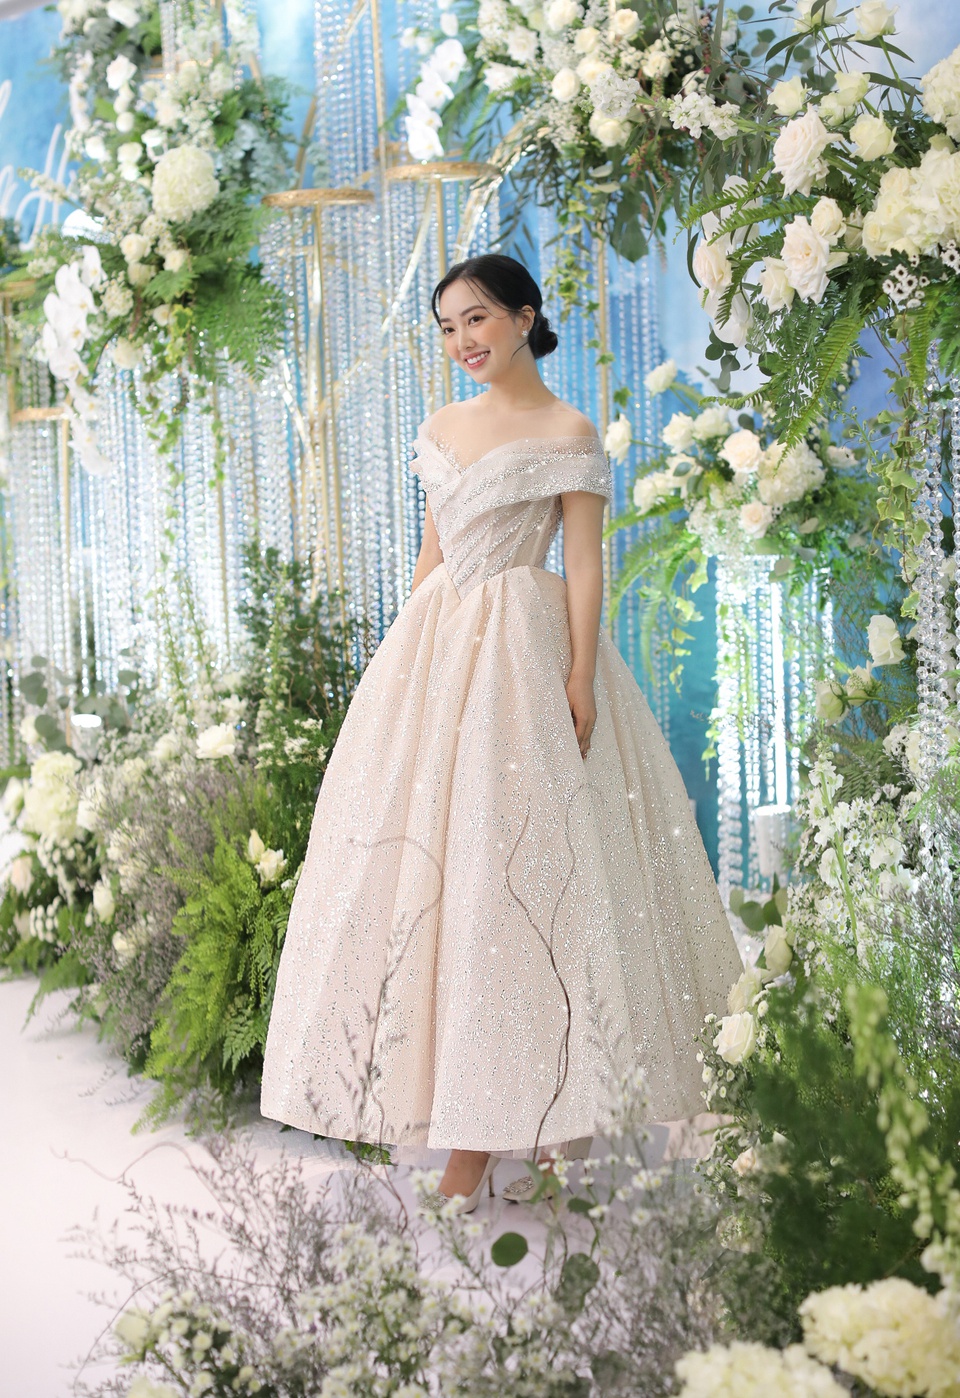 Trong tiệc, Mai Hà Trang diện váy gọn gàng hơn. Váy được đính đá preciosa và pha lê